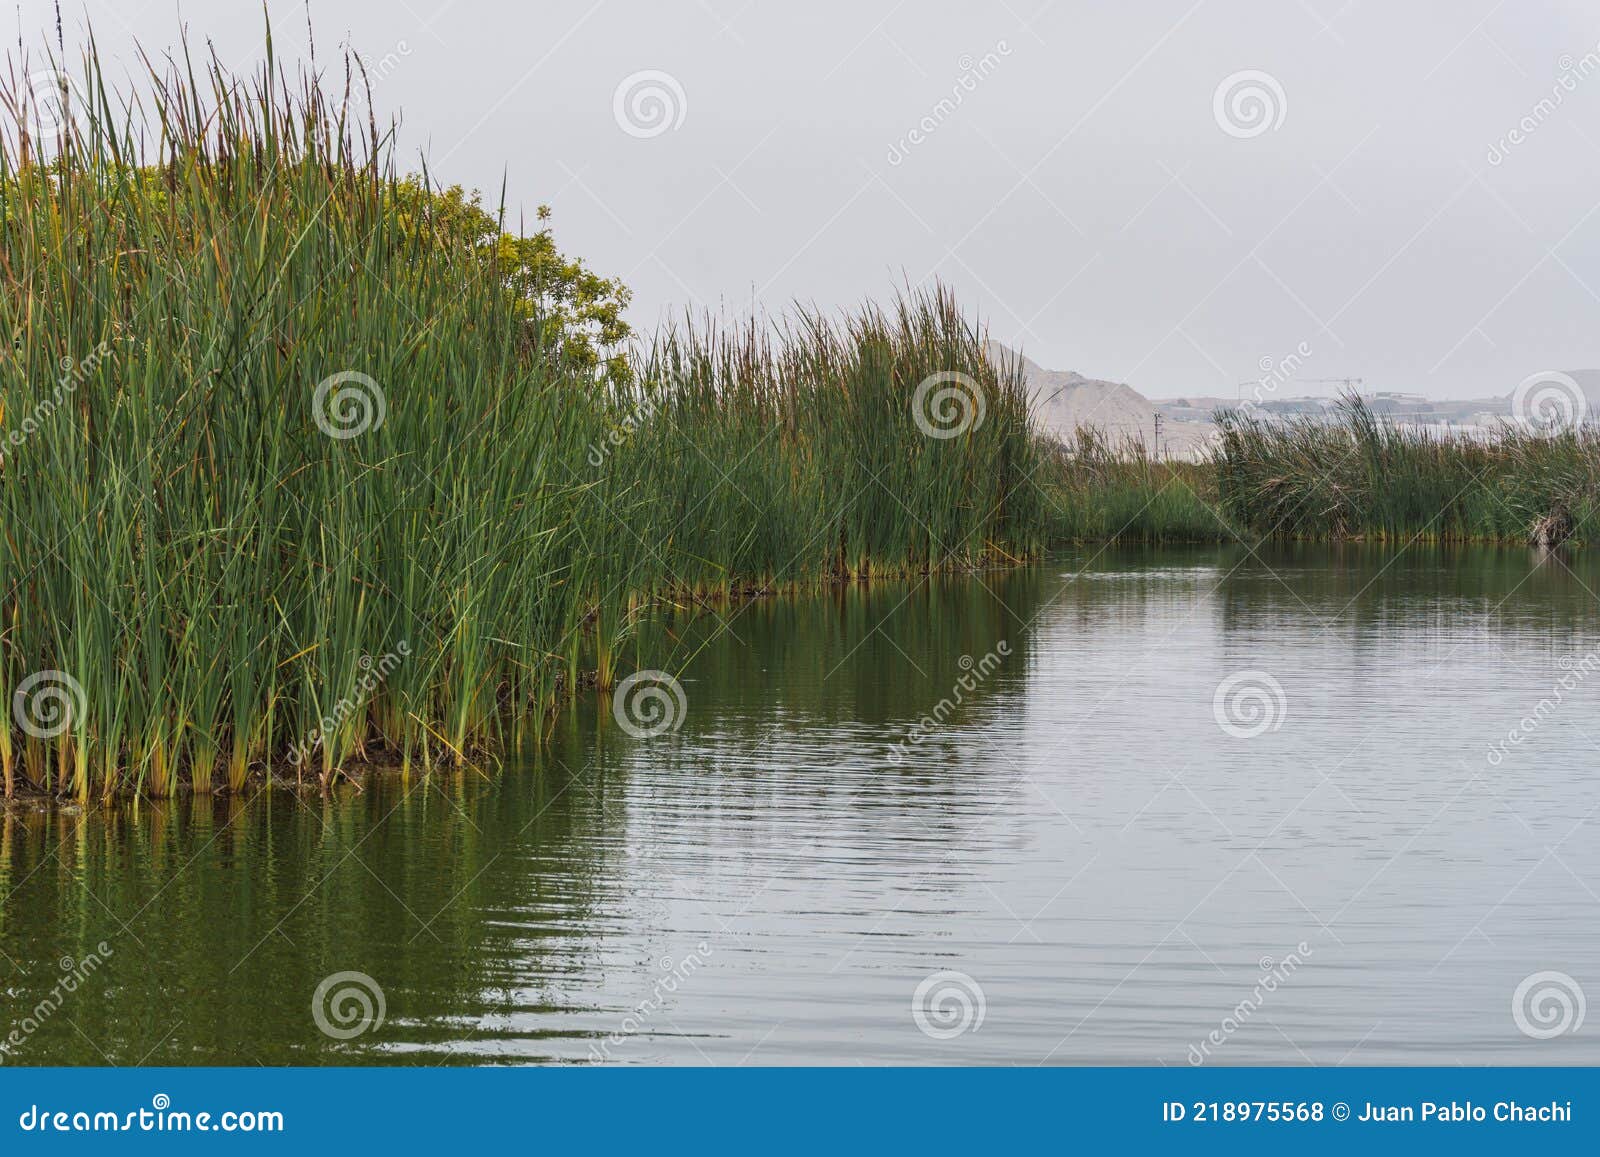 gÃÂ©nesis lagoon in pantanos de villa chorrillos lima peru